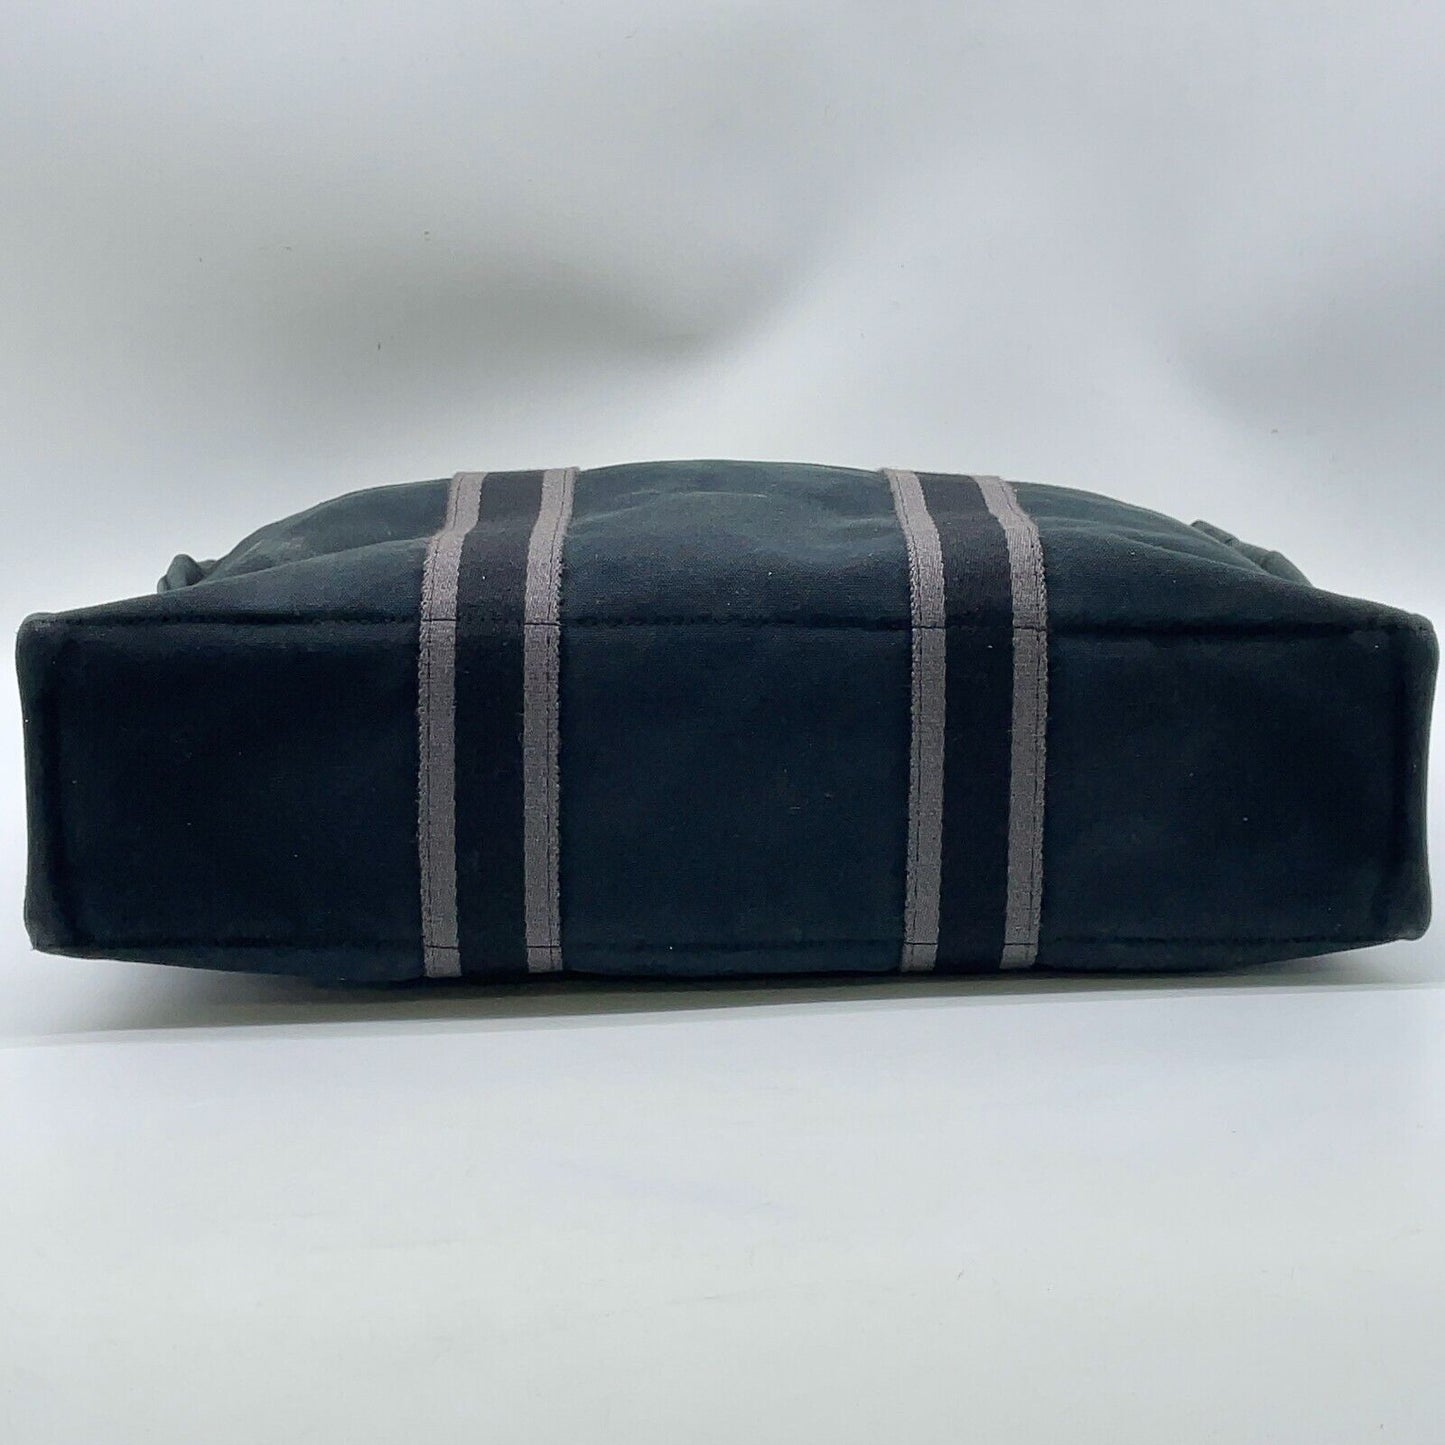 Original/Auth Hermès - Vintage Tote Bag Tasche - Baumwolle - Schwarz / Grau